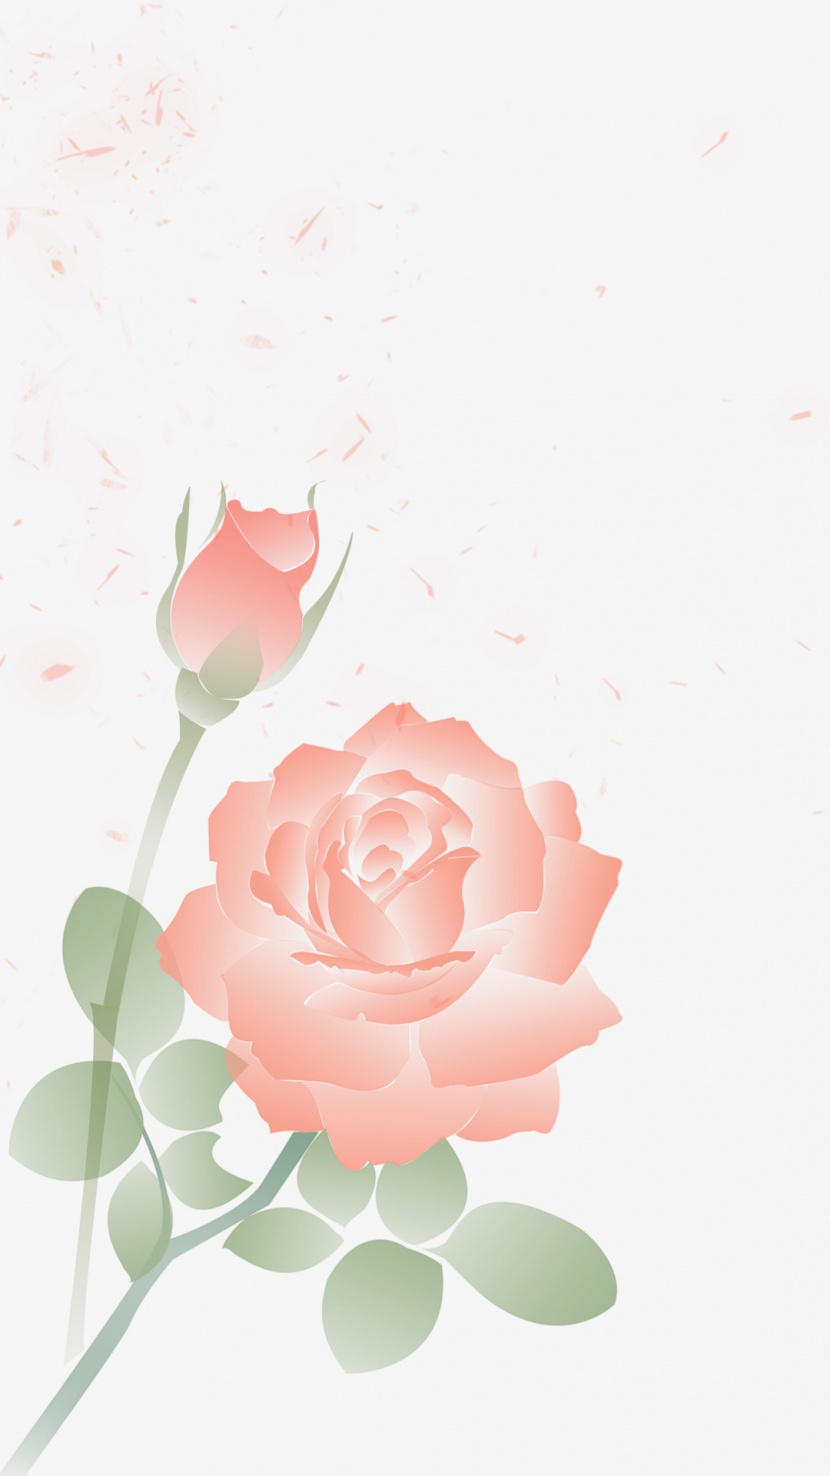 唯美浪漫玫瑰花朵花瓣